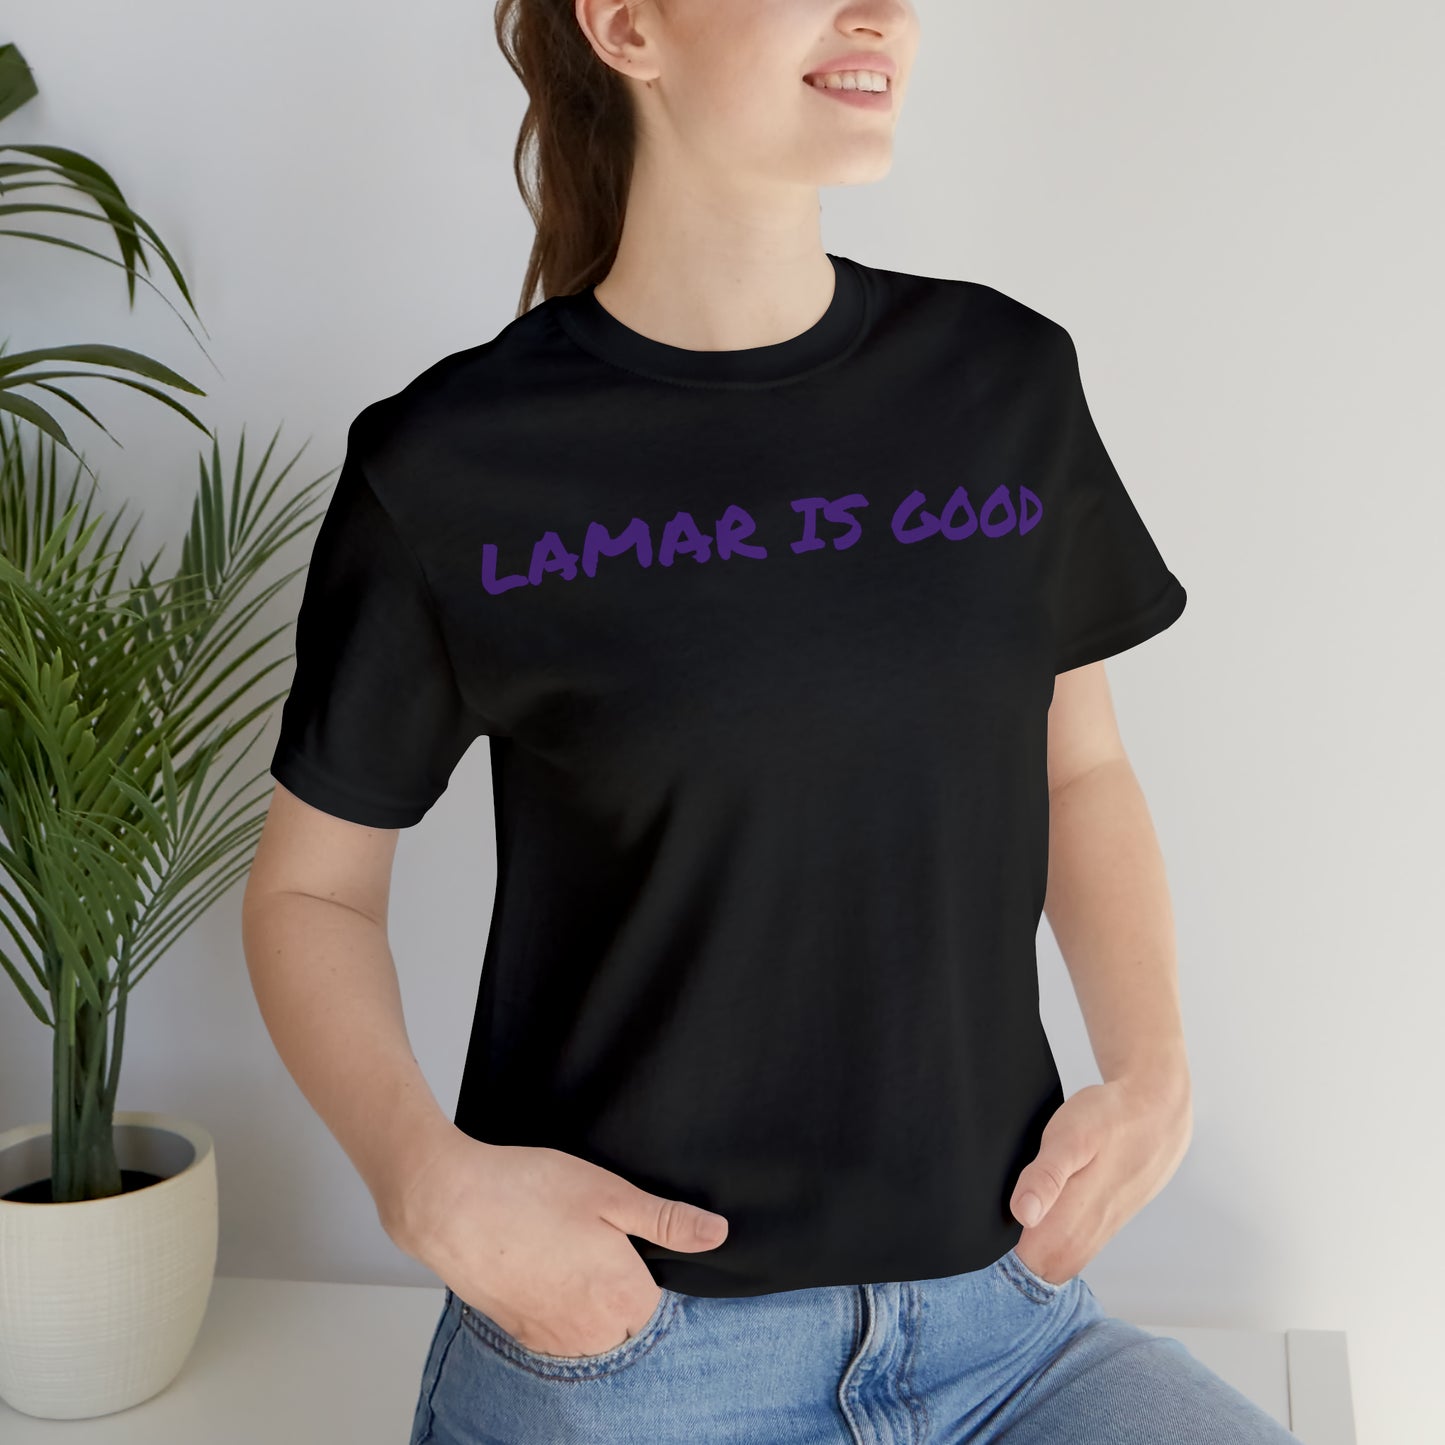 Lamar Is Good Tee